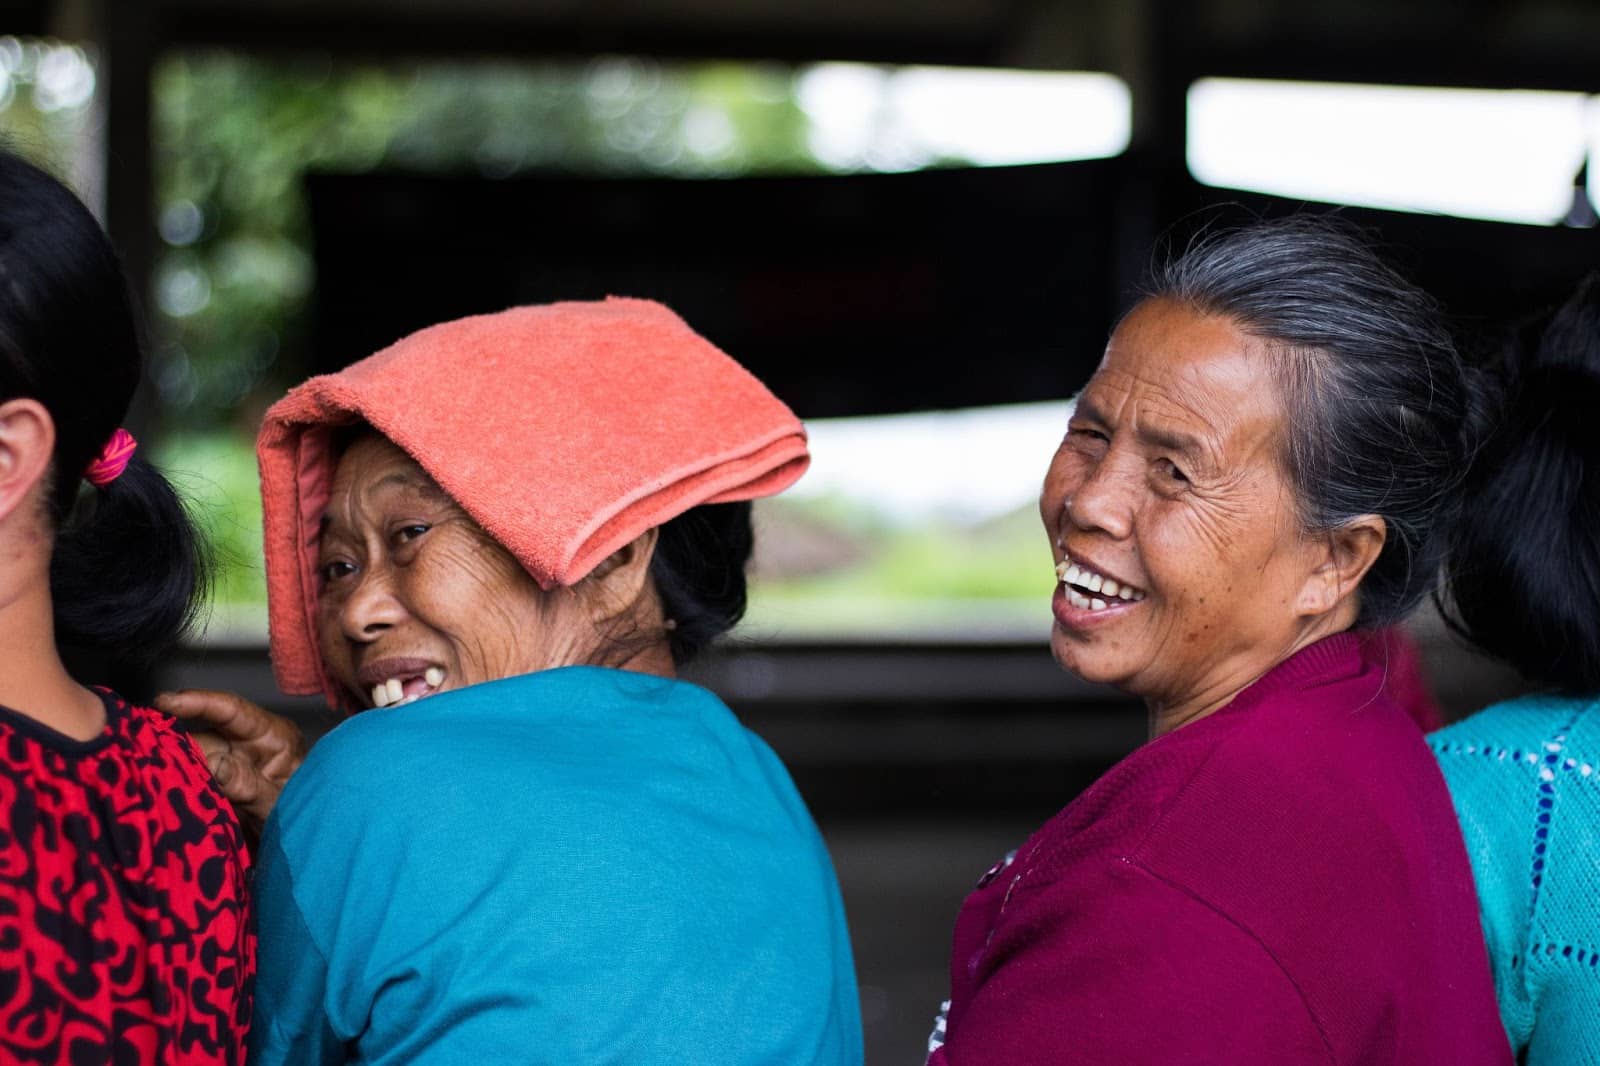 Cultura in Indonesia: Donne che ridono